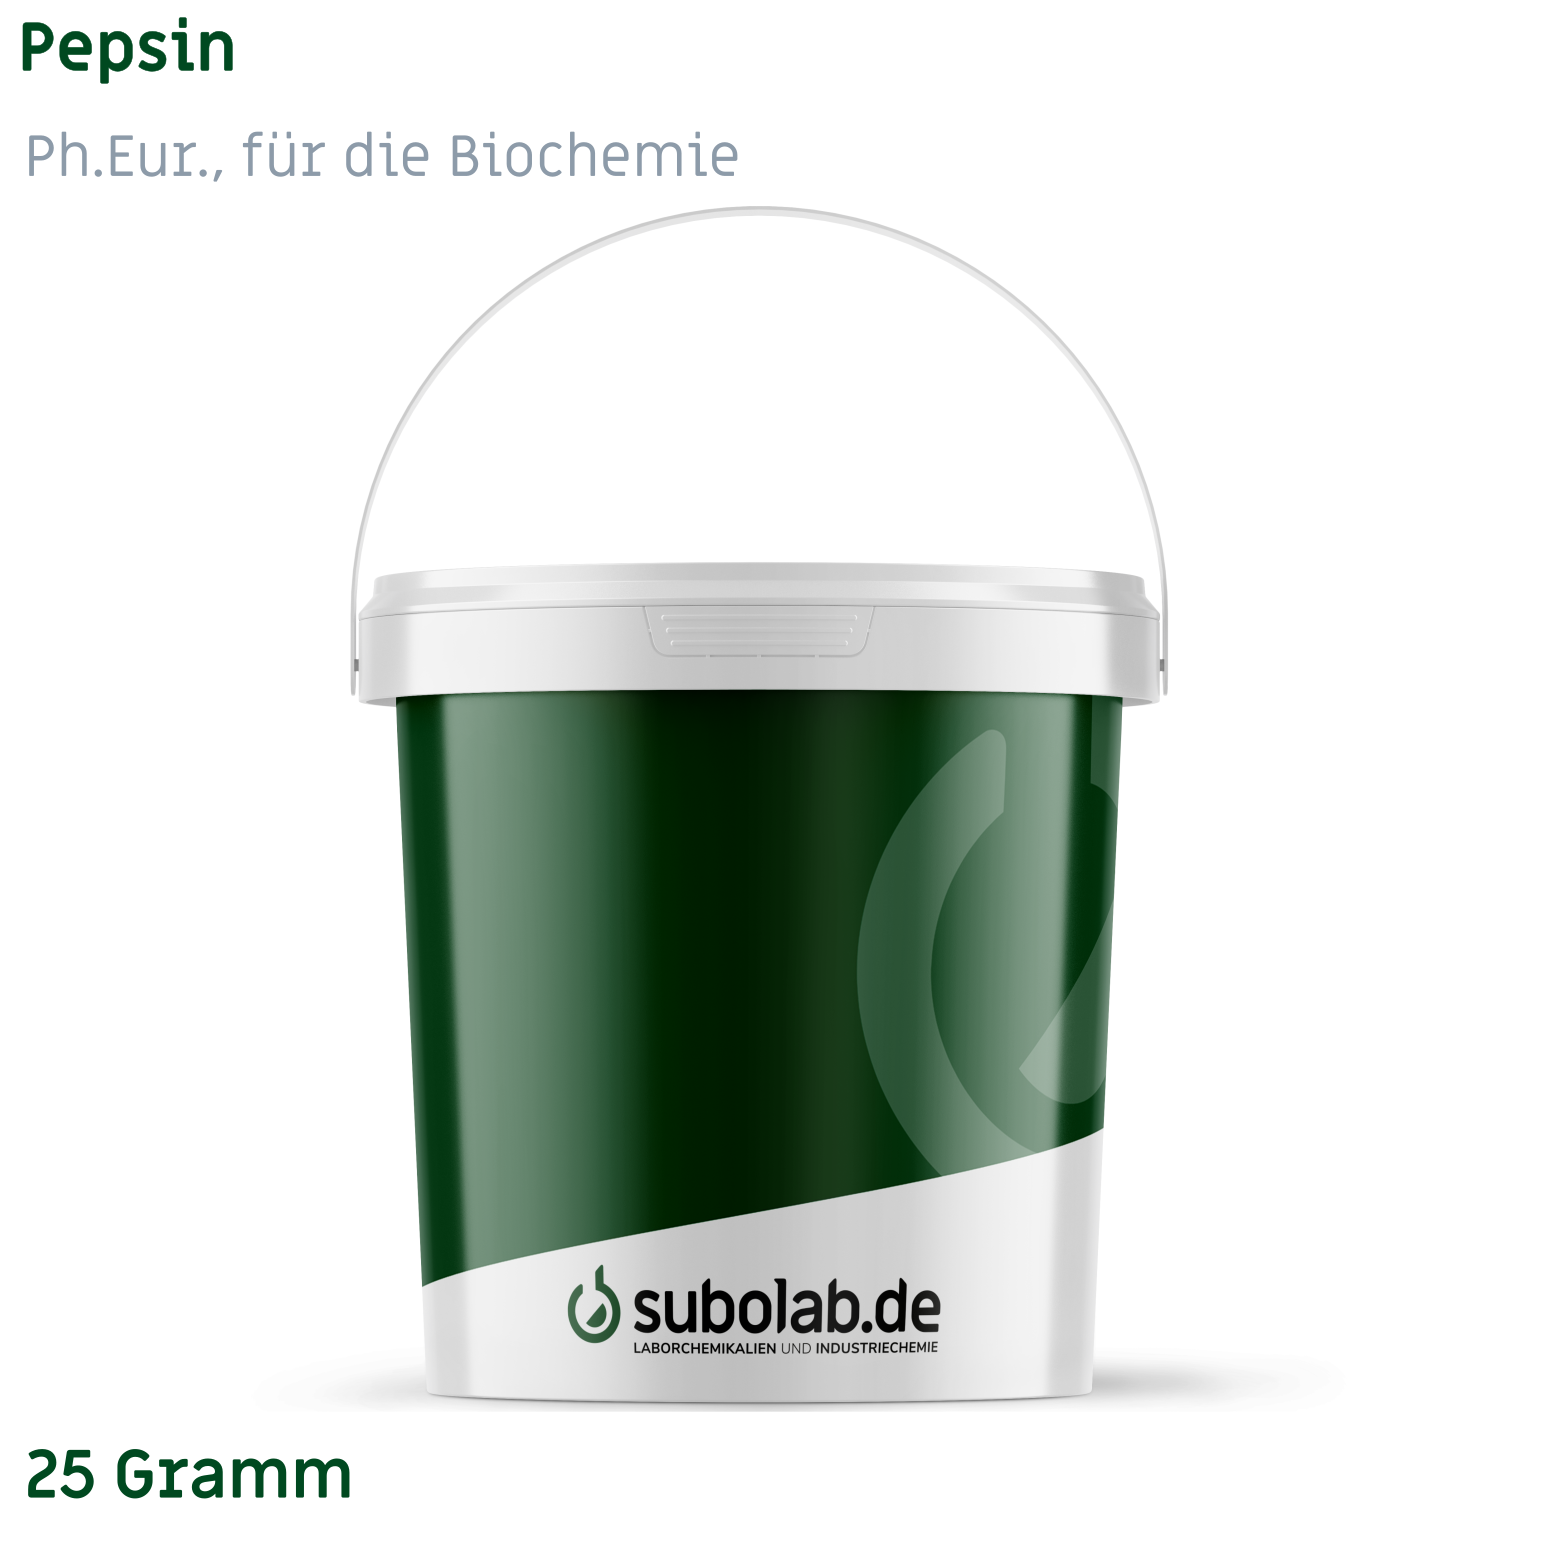 Bild von Pepsin (=0,5 E/mg; Ph.Eur., für die Biochemie) (25 Gramm)